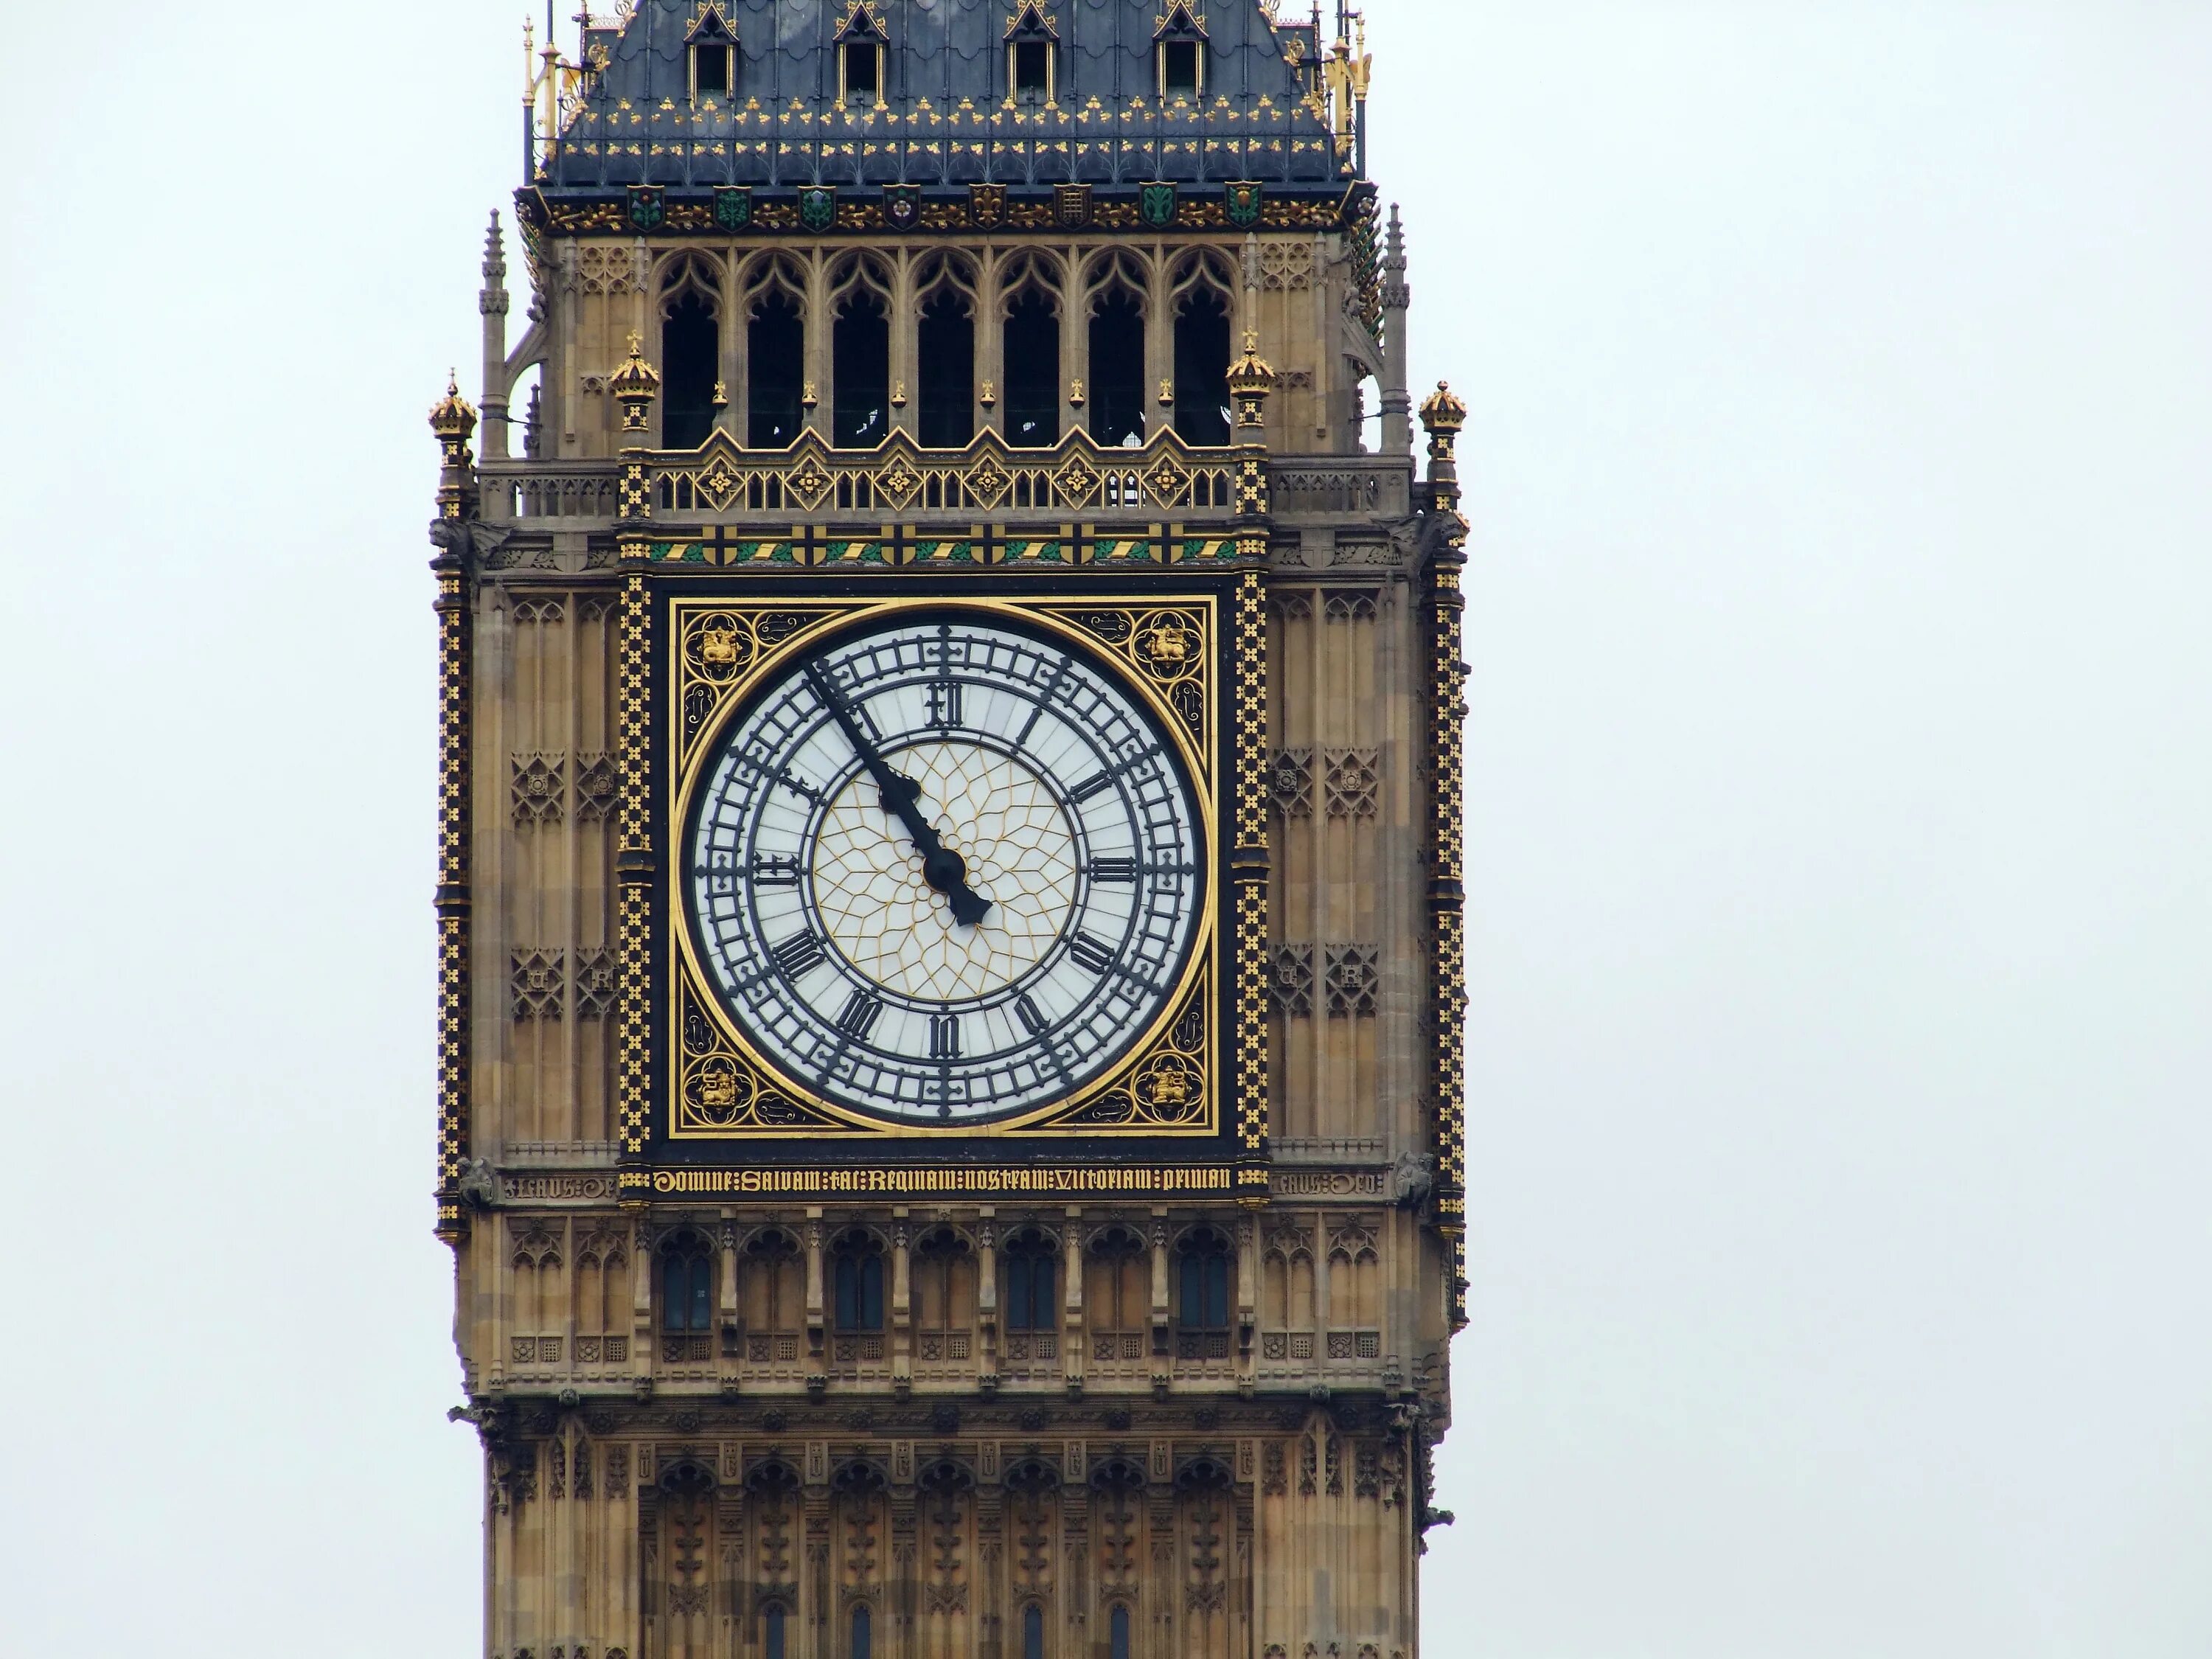 Watching britain. Башня в Англии Биг Бен. Англия часы Биг Бен. Часовая башня Биг Бен. Биг-Бен (башня Елизаветы).